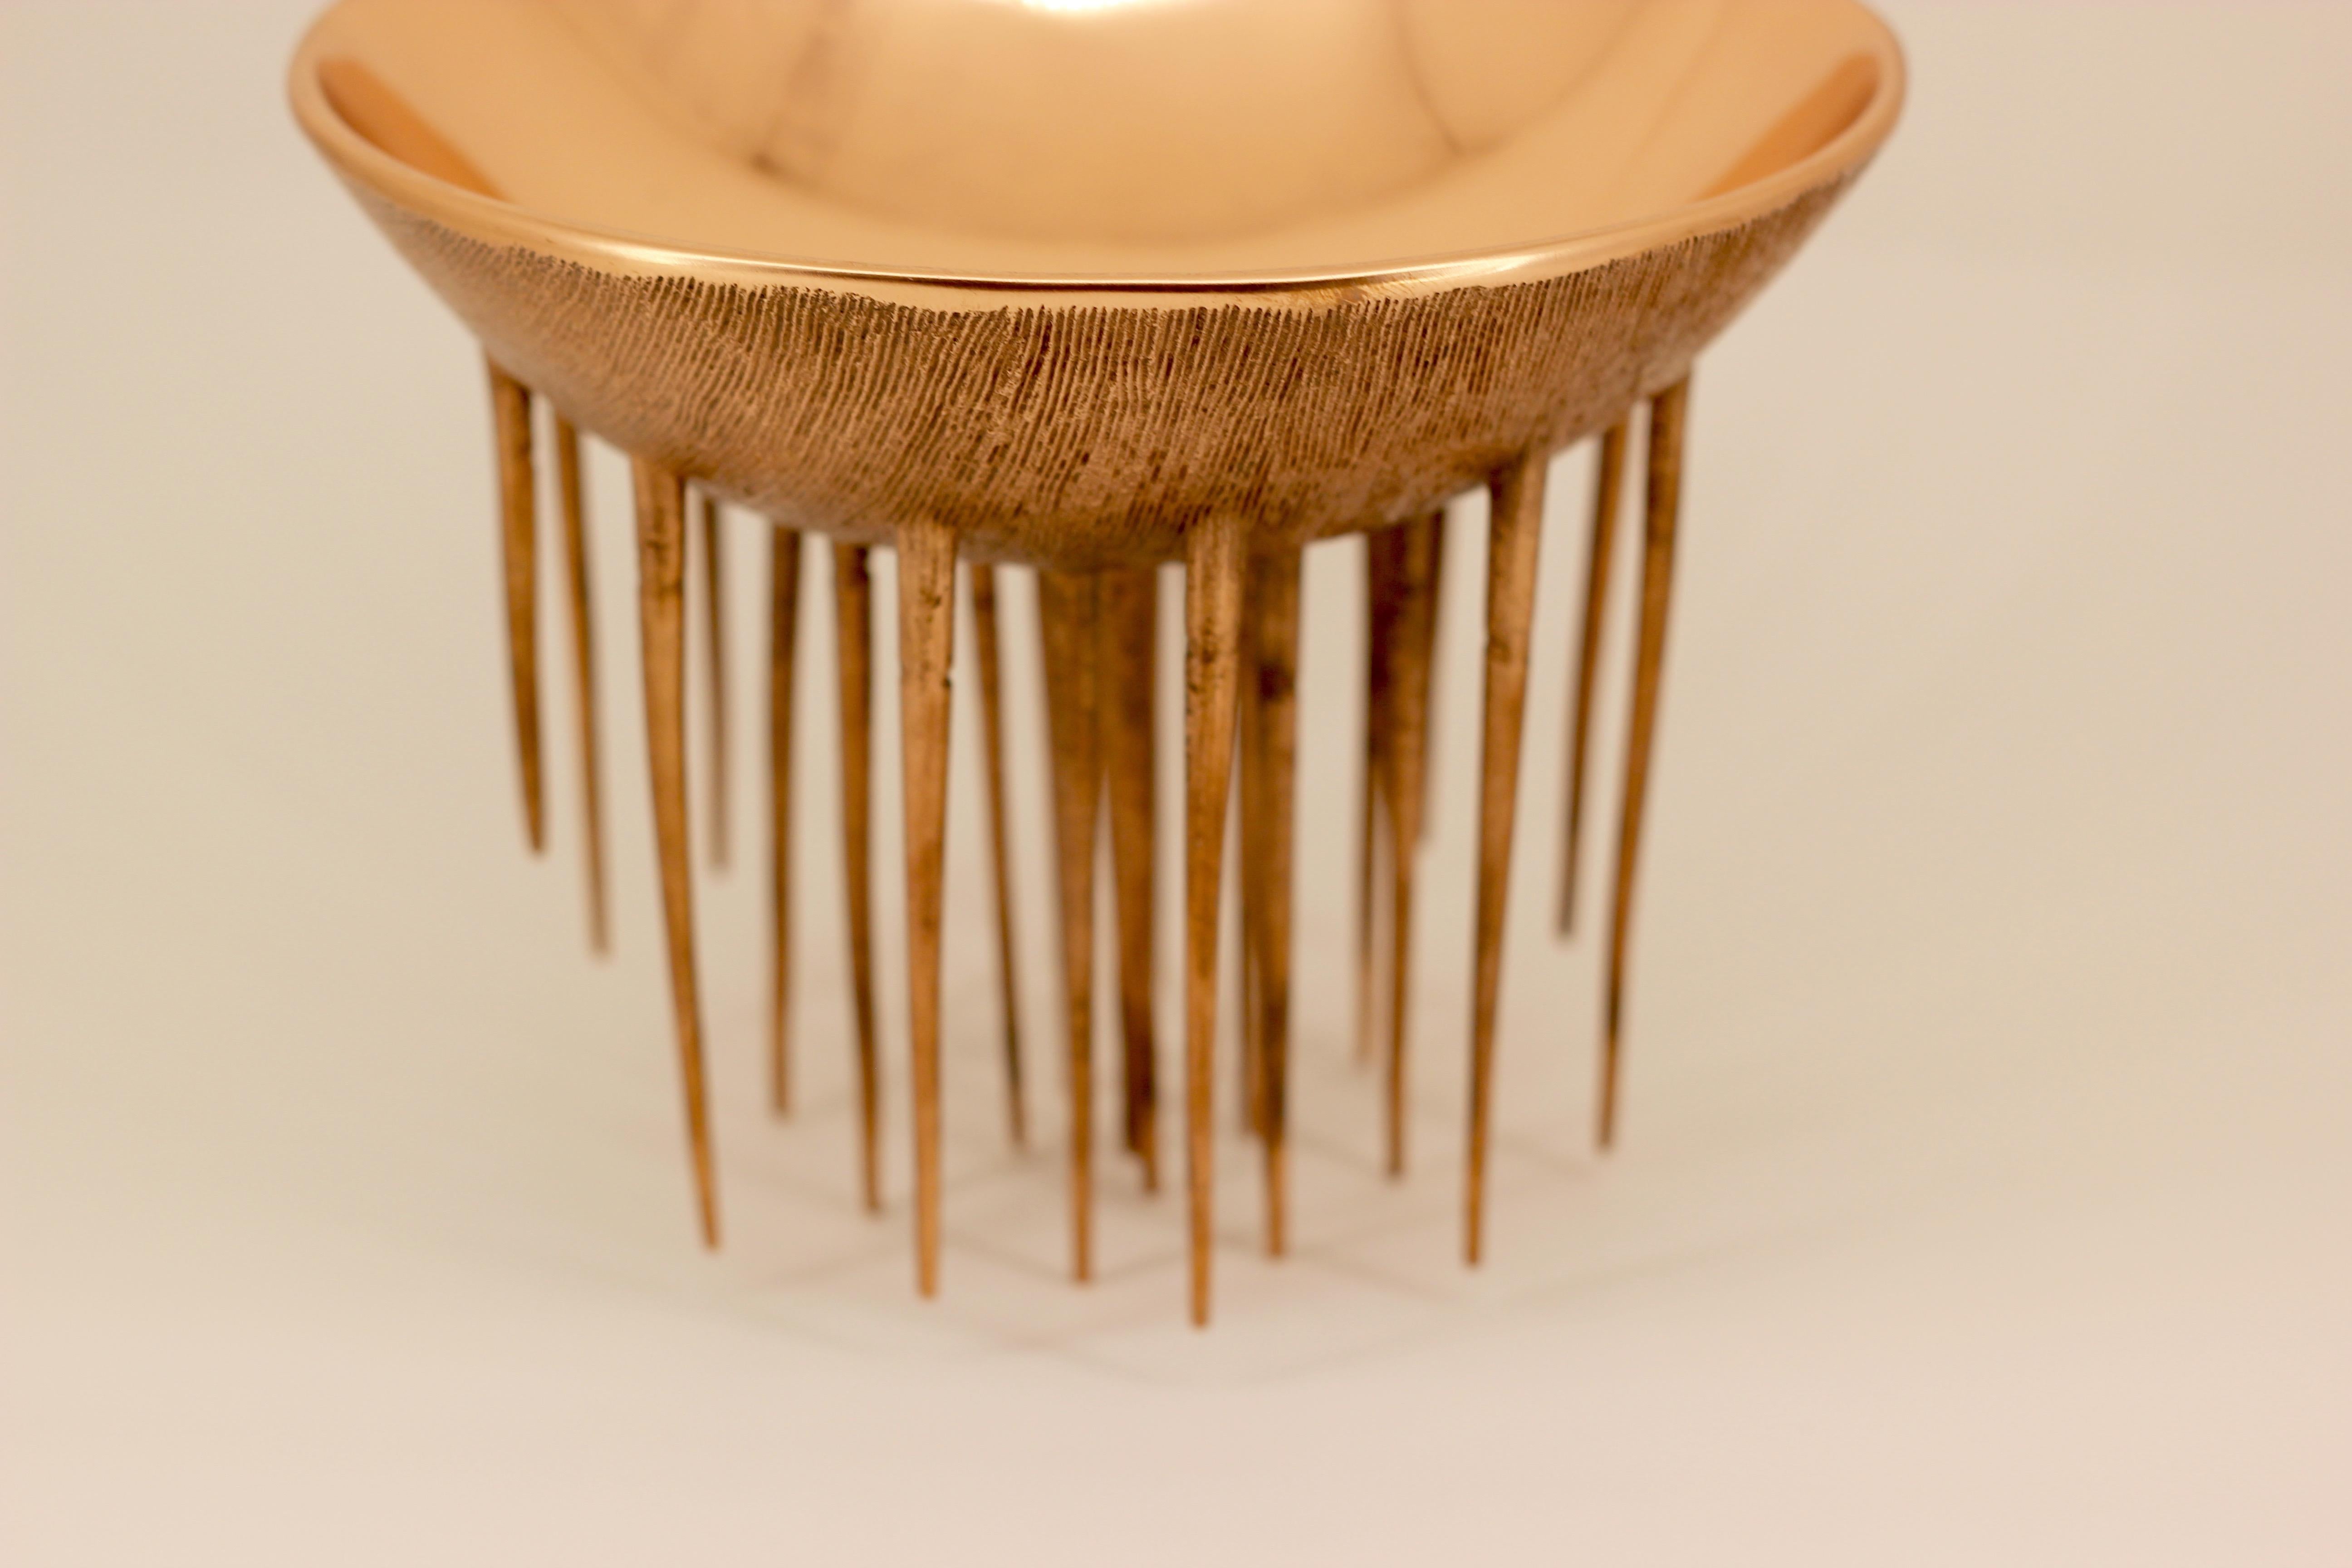 Contemporary Unique and Original Handmade Cast Bronze Decorative Bowl